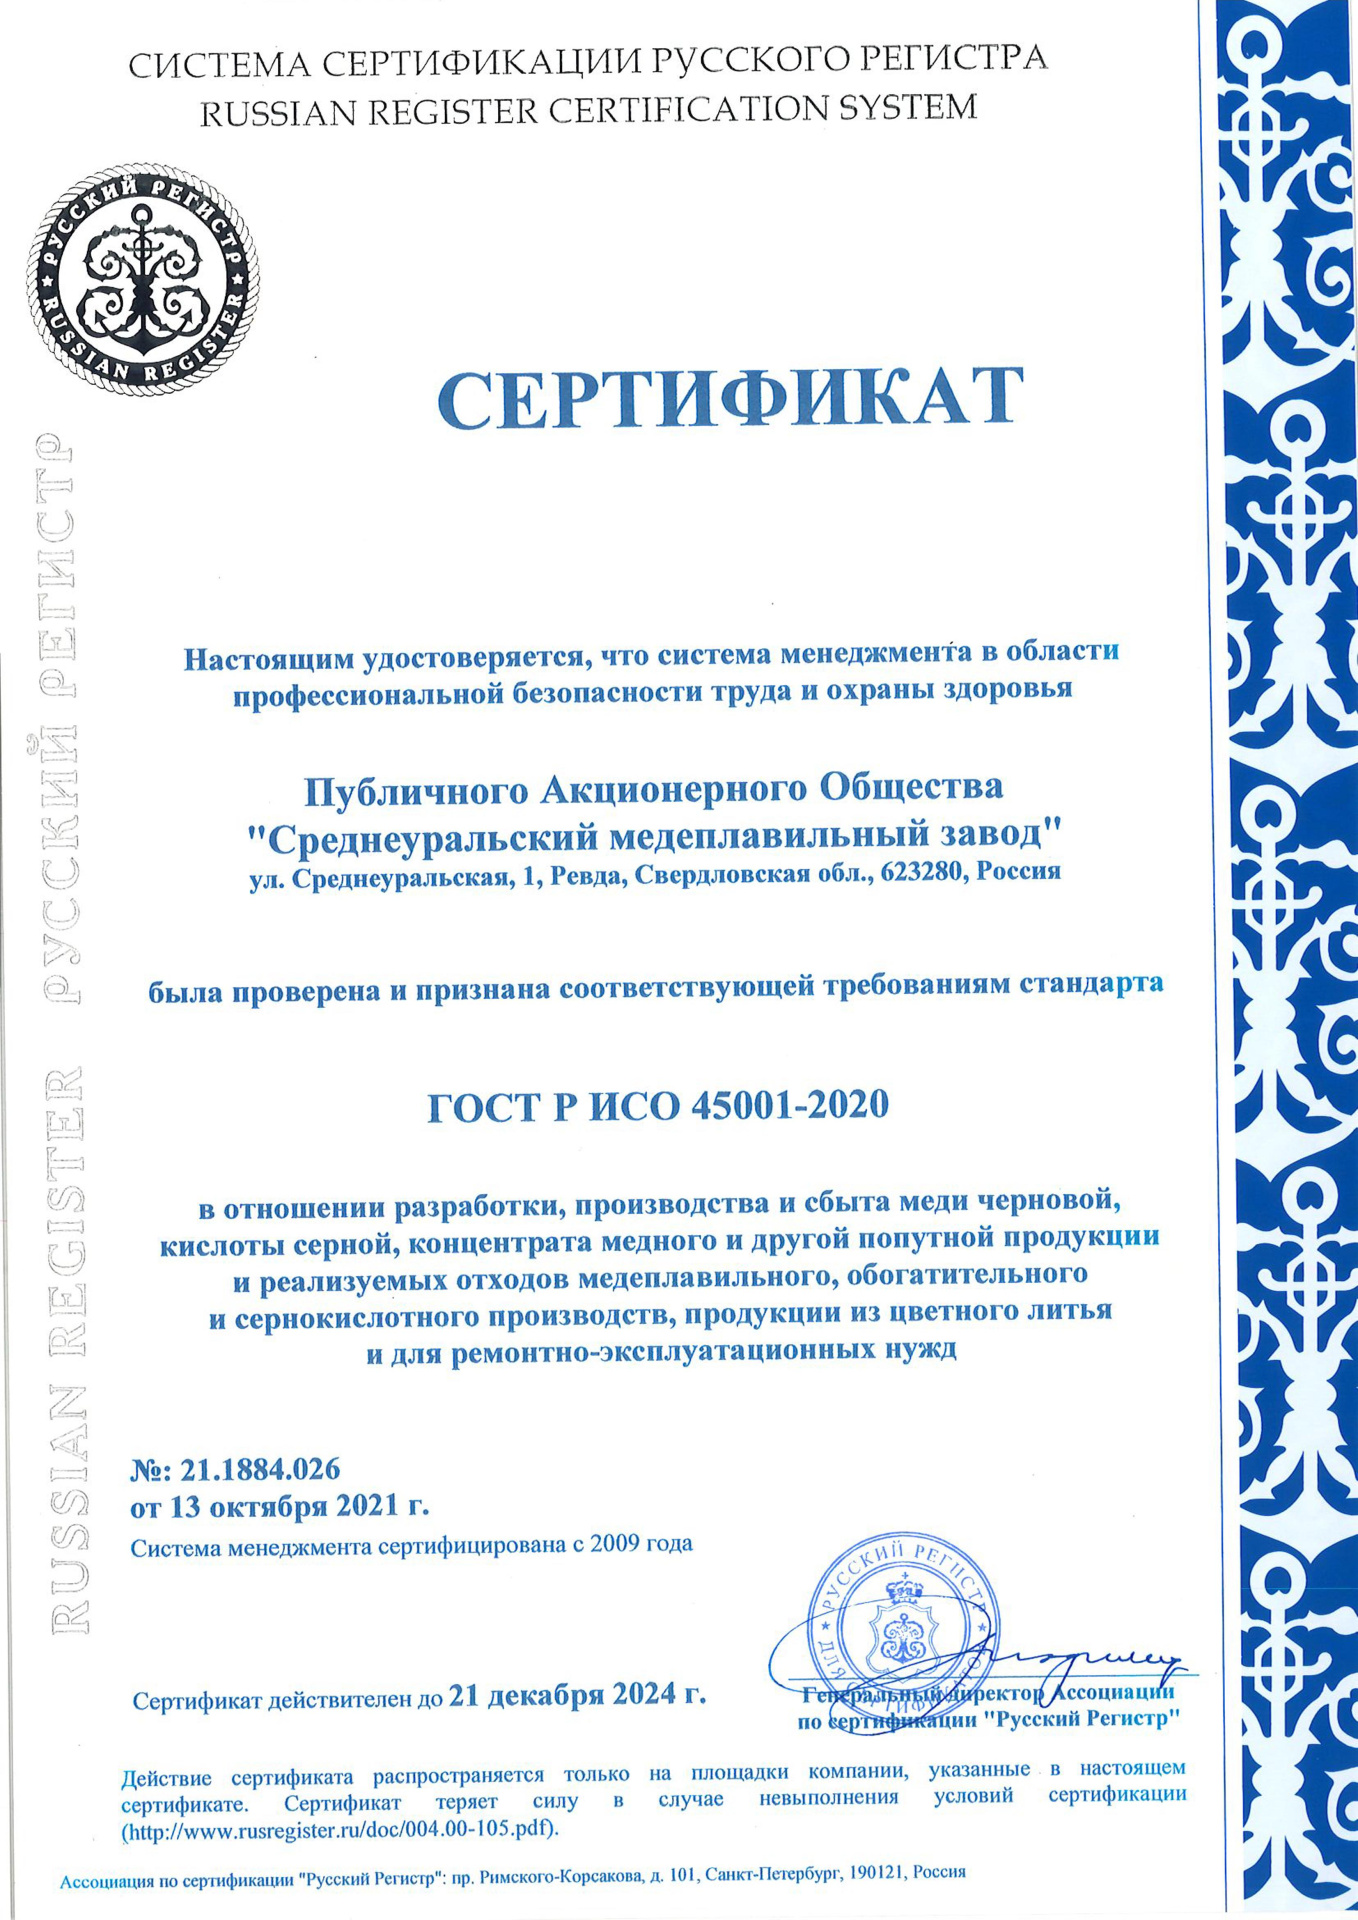 ГОСТ Р ИСО 45001-2020_RUS.jpg